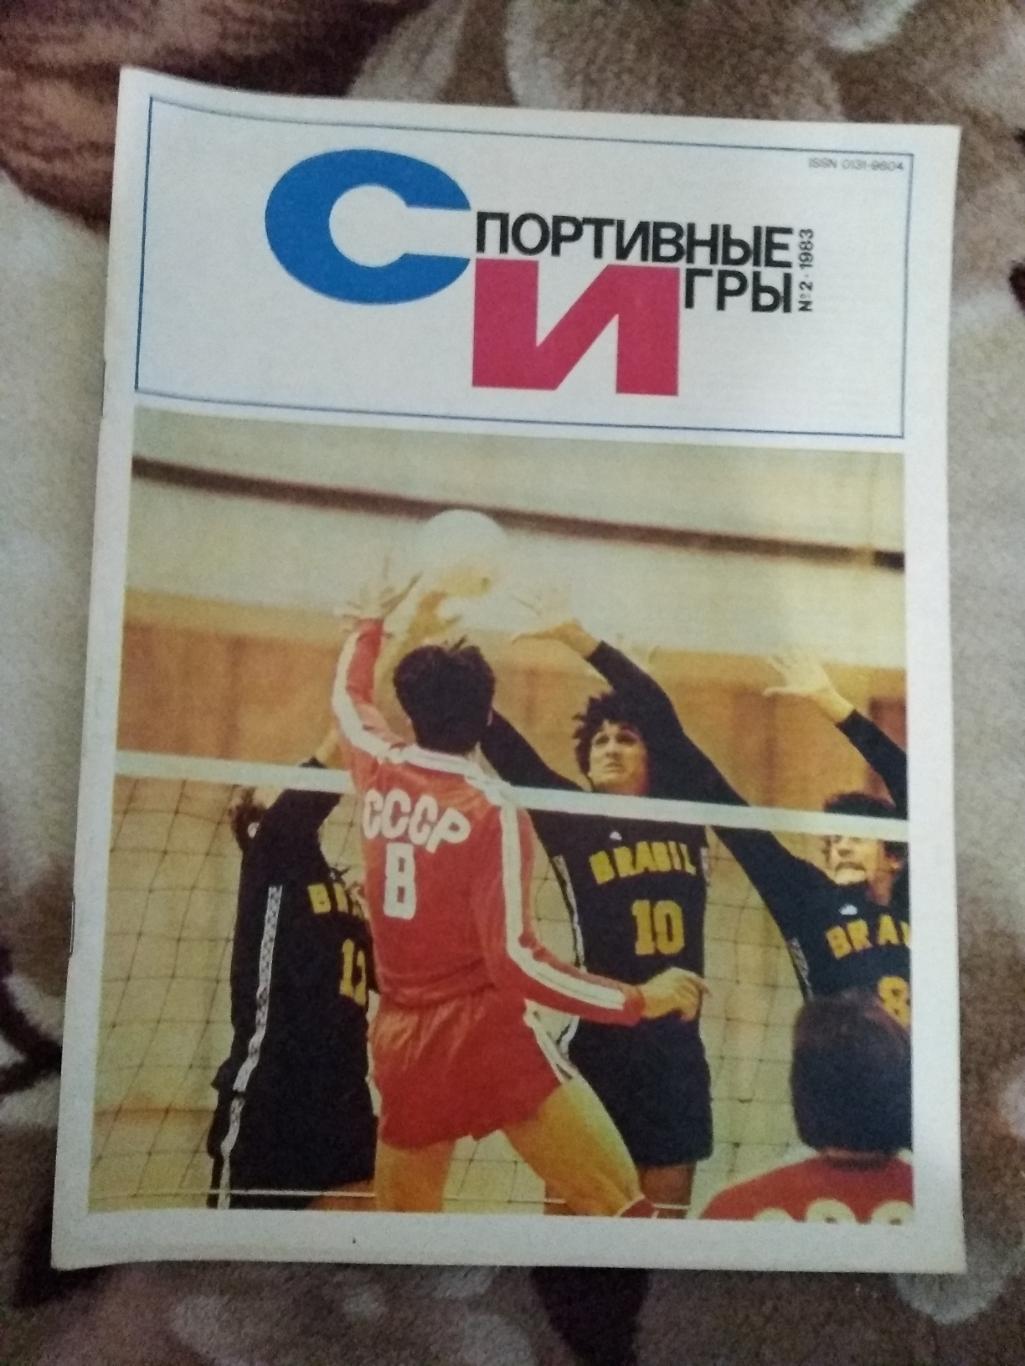 Журнал.Спортивные игры № 2 1983 г.